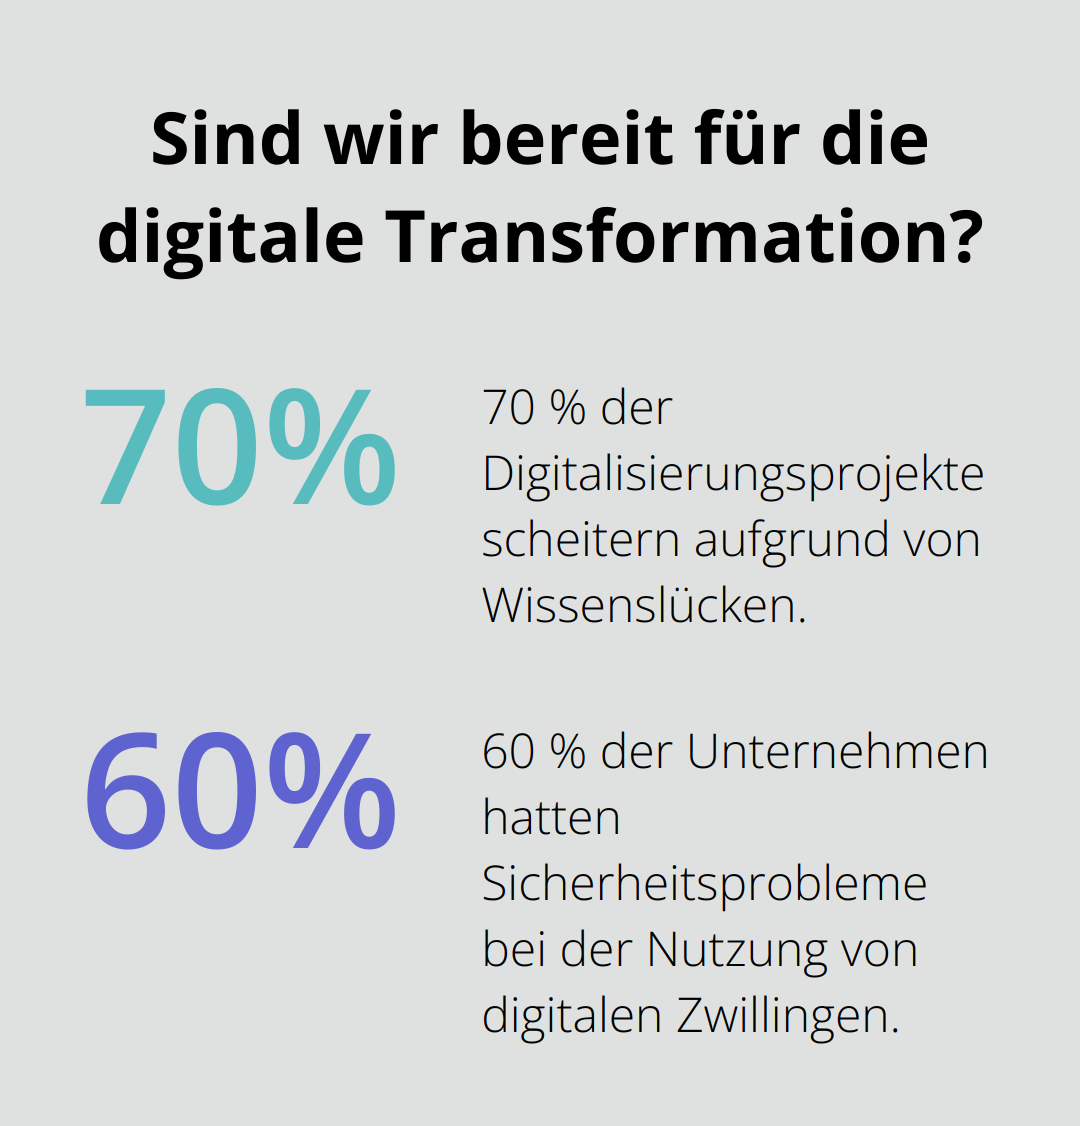 Fact - Sind wir bereit für die digitale Transformation?